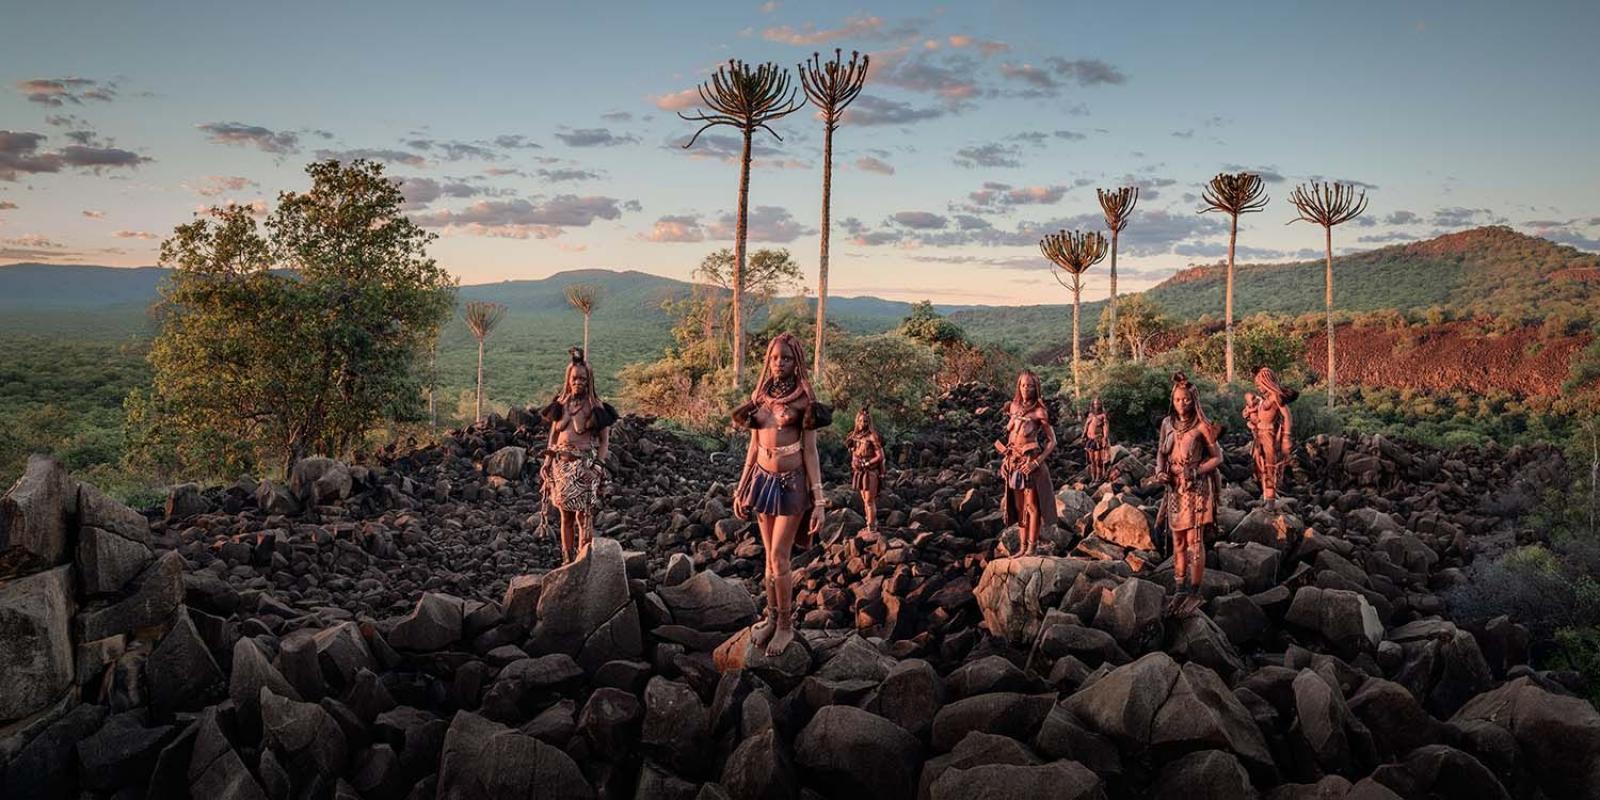 XXXII 33 Dames Muchimba, Himba Angola 2017

Le peuple Muchimba est un peuple semi-nomade qui vit principalement dans la zone frontalière de l'Angola avec la Namibie, sur le plateau sec du Kaokoveld, dans la région de Cunene. 

La rivière Cunene est